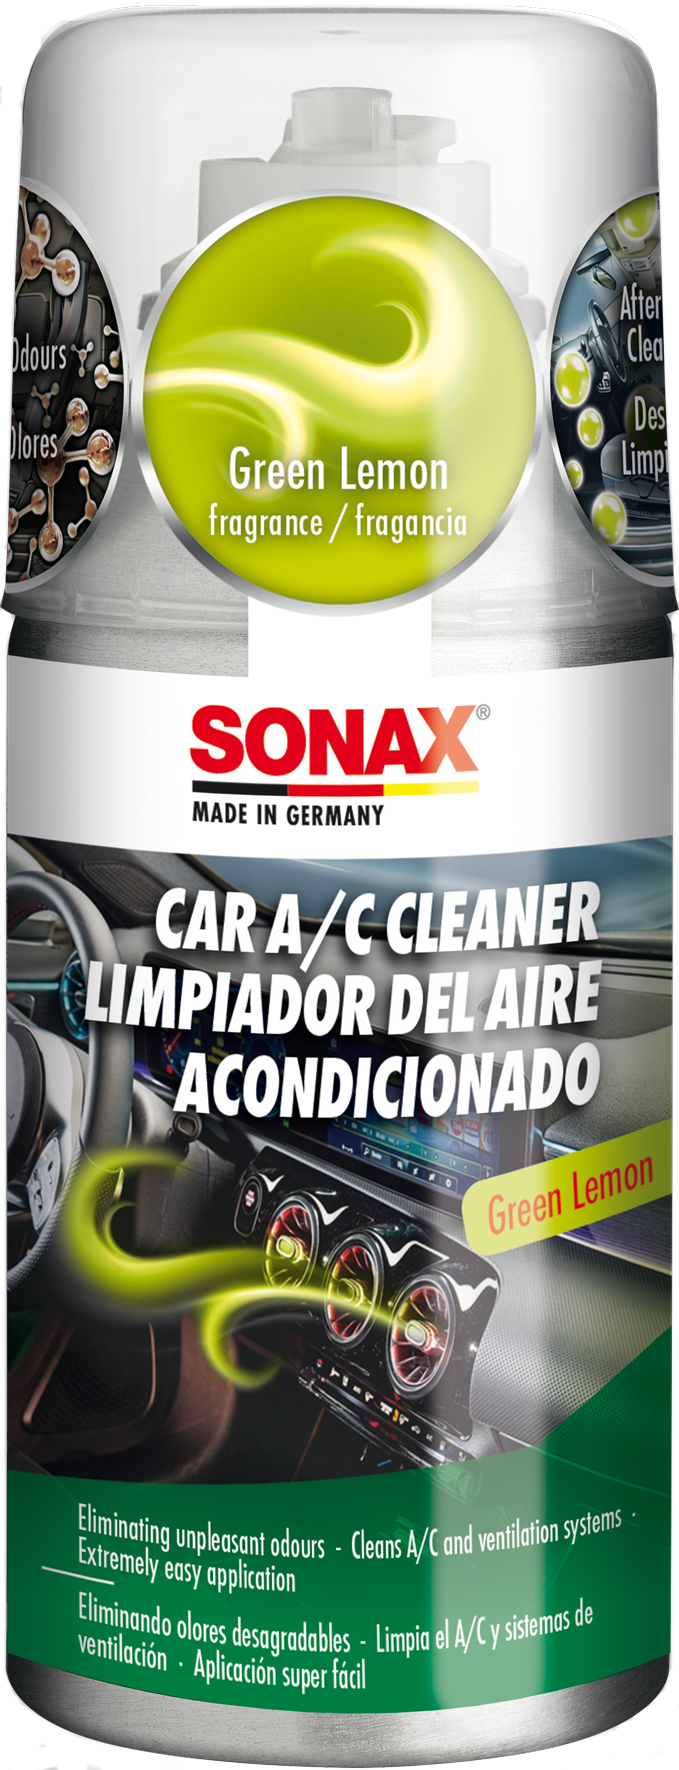 Antifrost Window Cleaner SONAX Konzentrat with lemon scent 1000ml